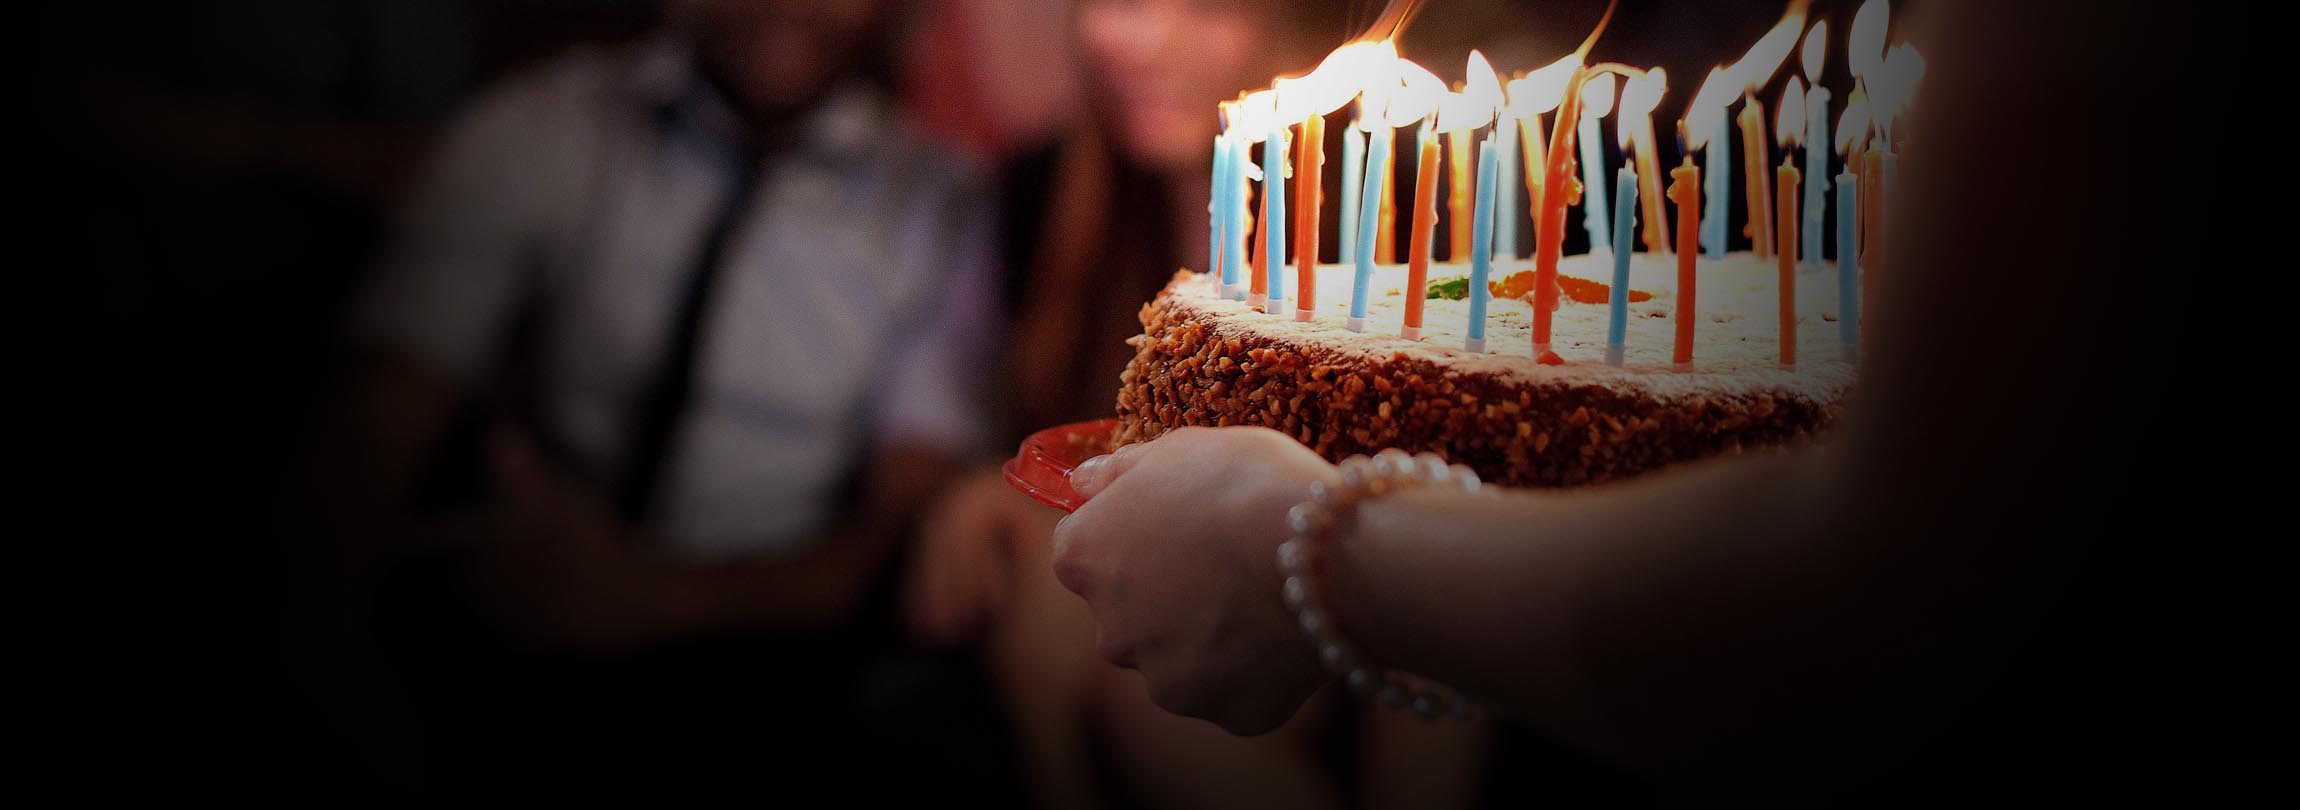 Por que devemos comemorar os aniversários?